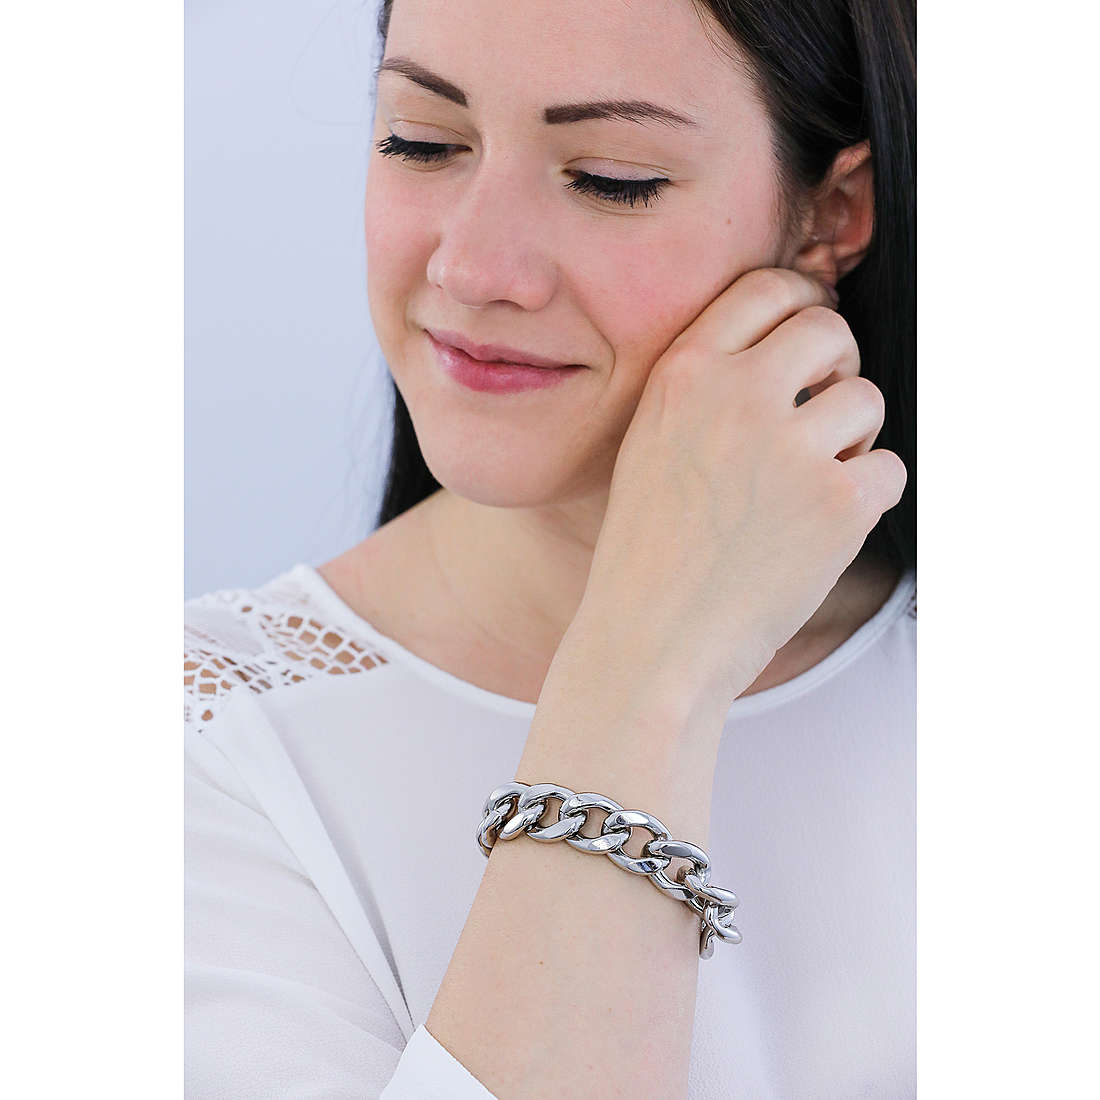 Sagapò bracelets Chunky woman SHK11 photo wearing